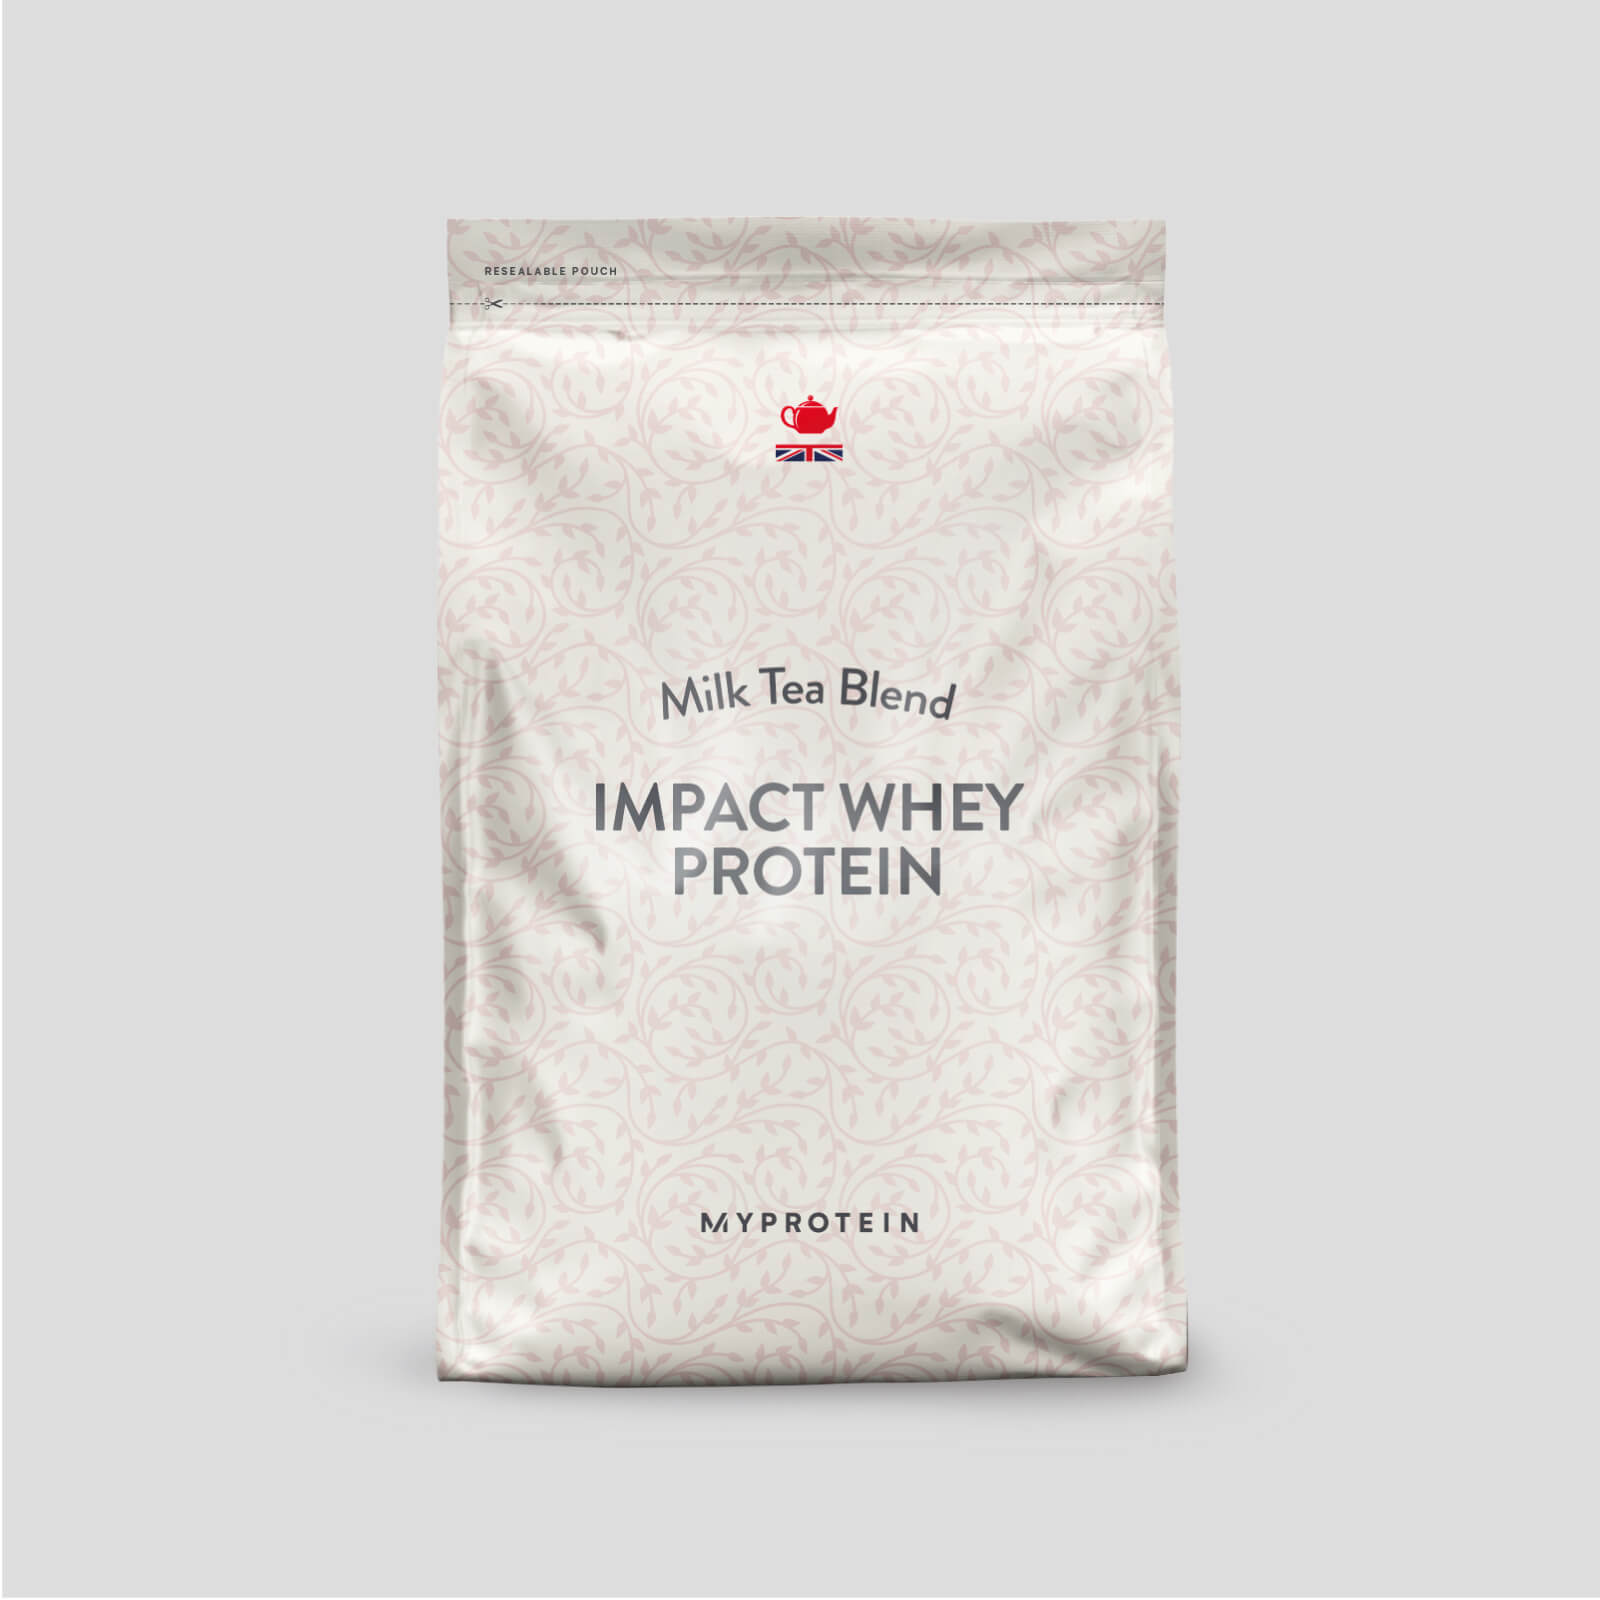 Impact Whey Protein - 250g - Milk Tea